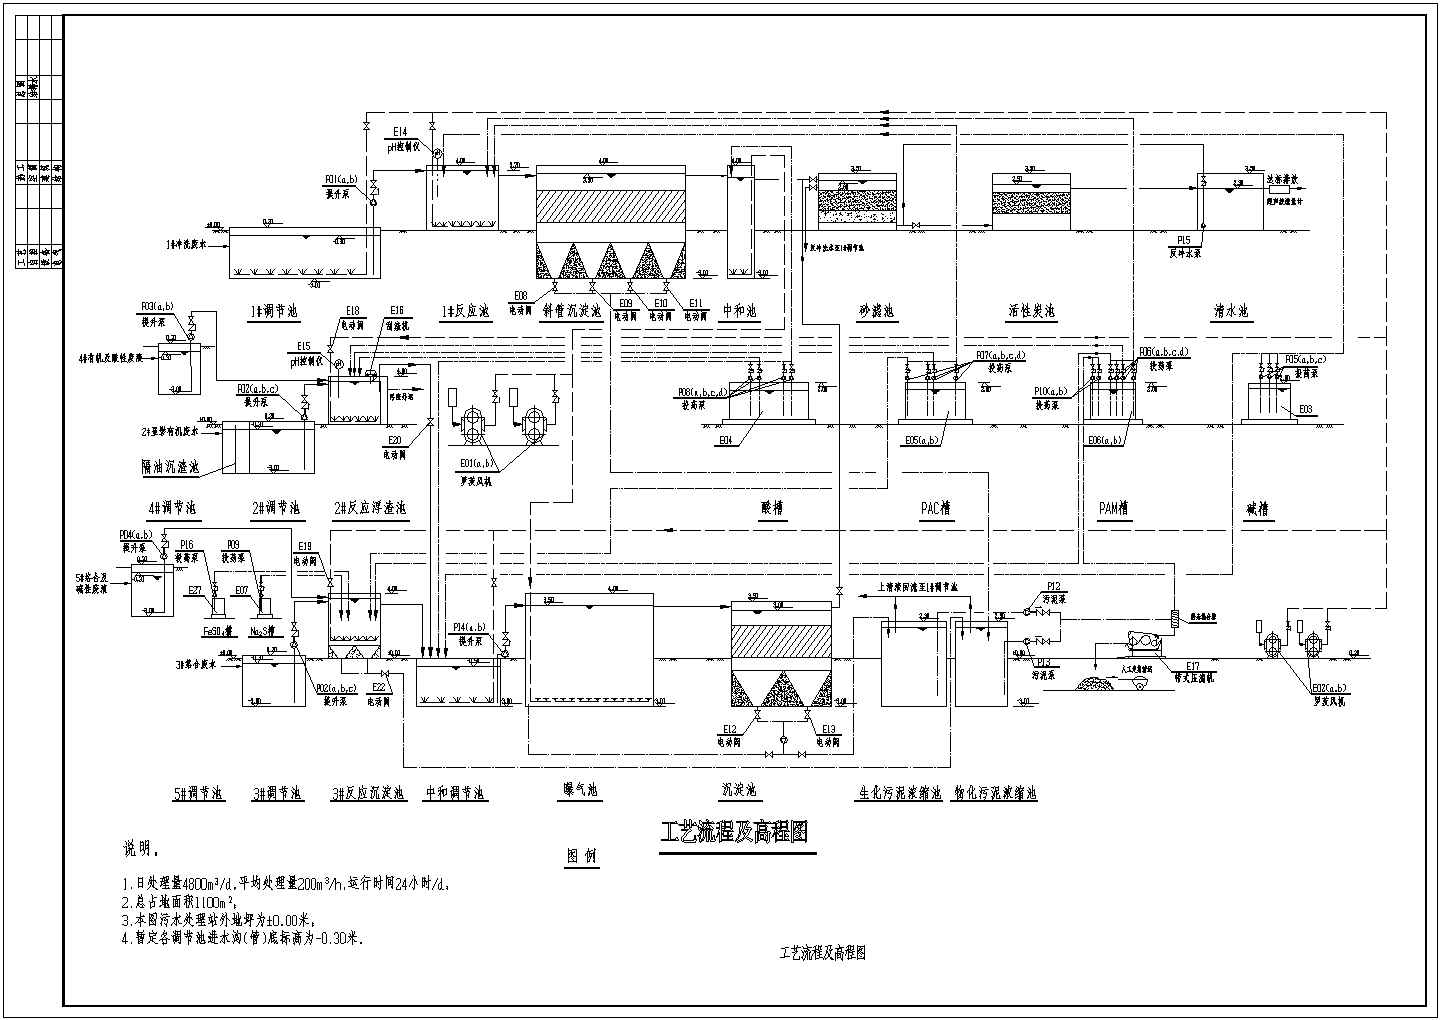 某印刷电路板厂污水水解酸化处理流程图纸